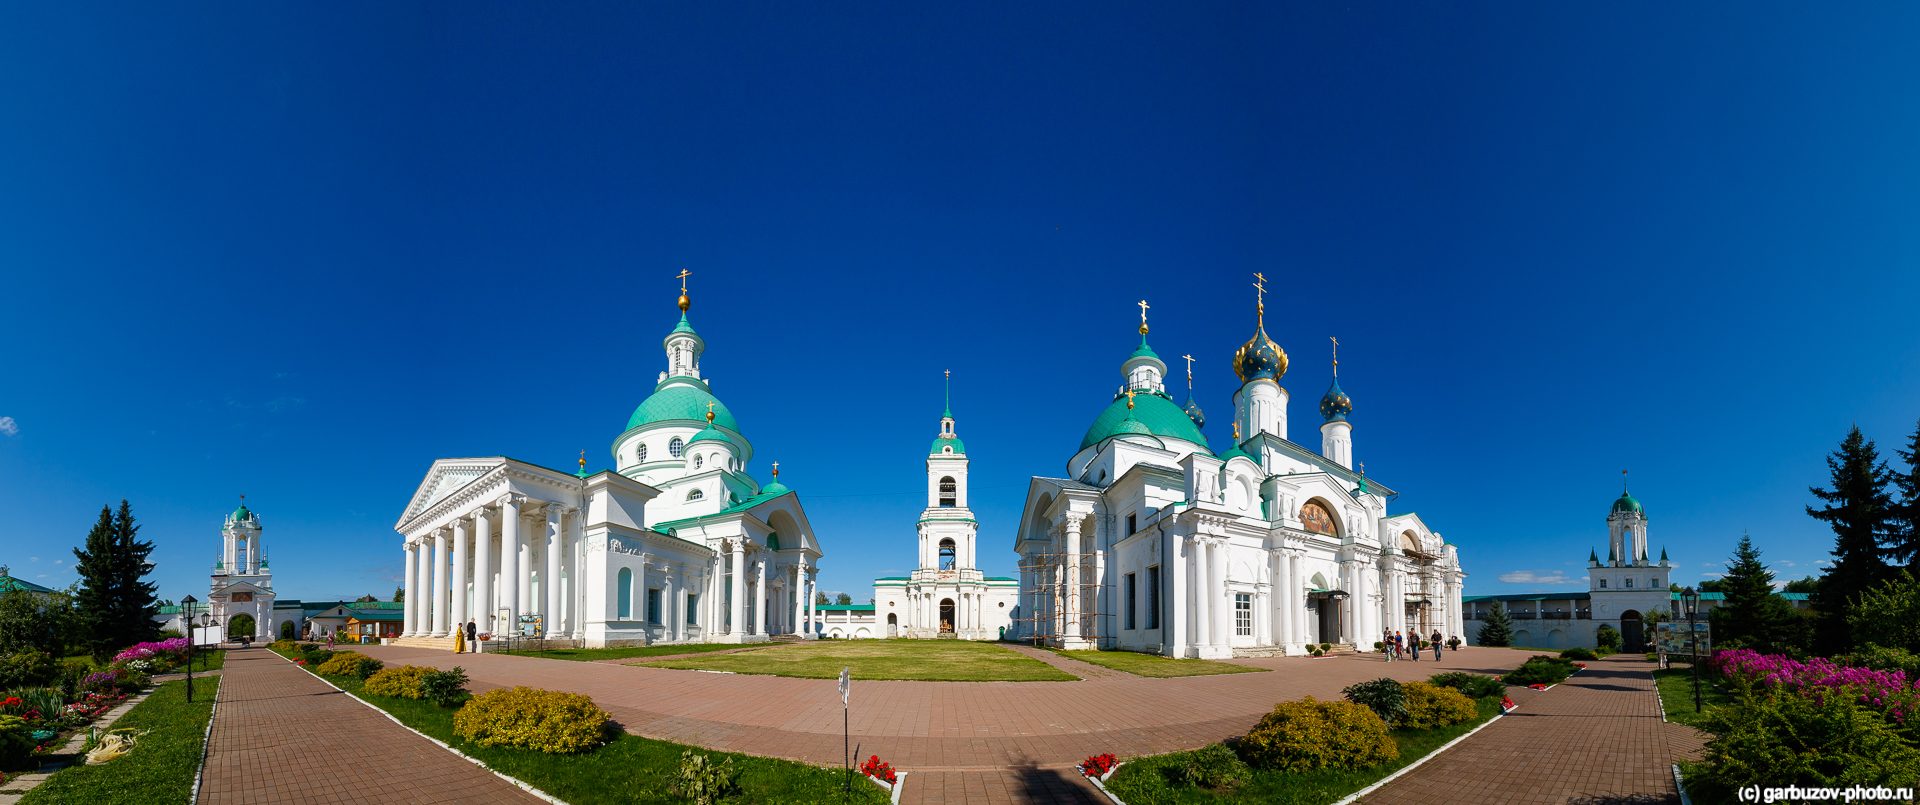 Спасо-Яковлевский монастырь в Ростове Великом внутри